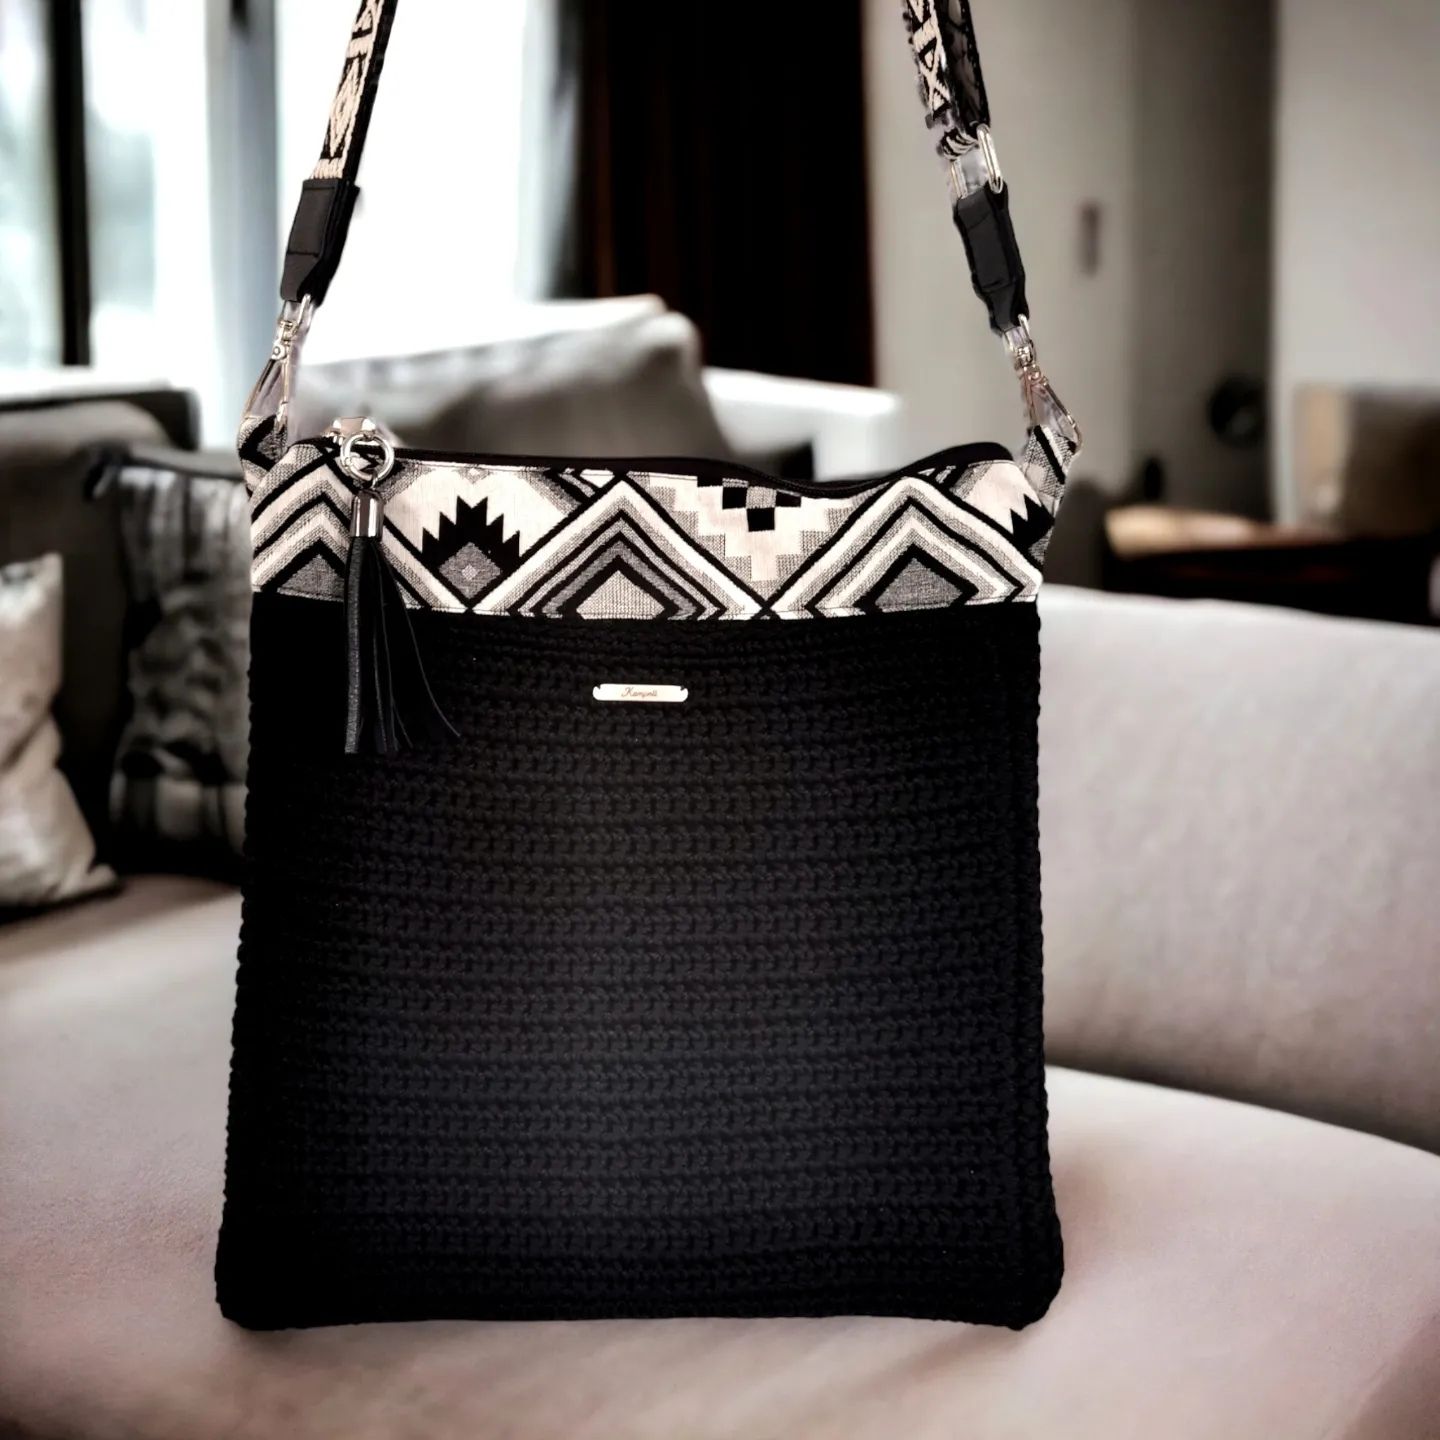 Μαύρη τσάντα πλεκτή σε συνδυασμό με ύφασμα Aztec motif & ιμάντα